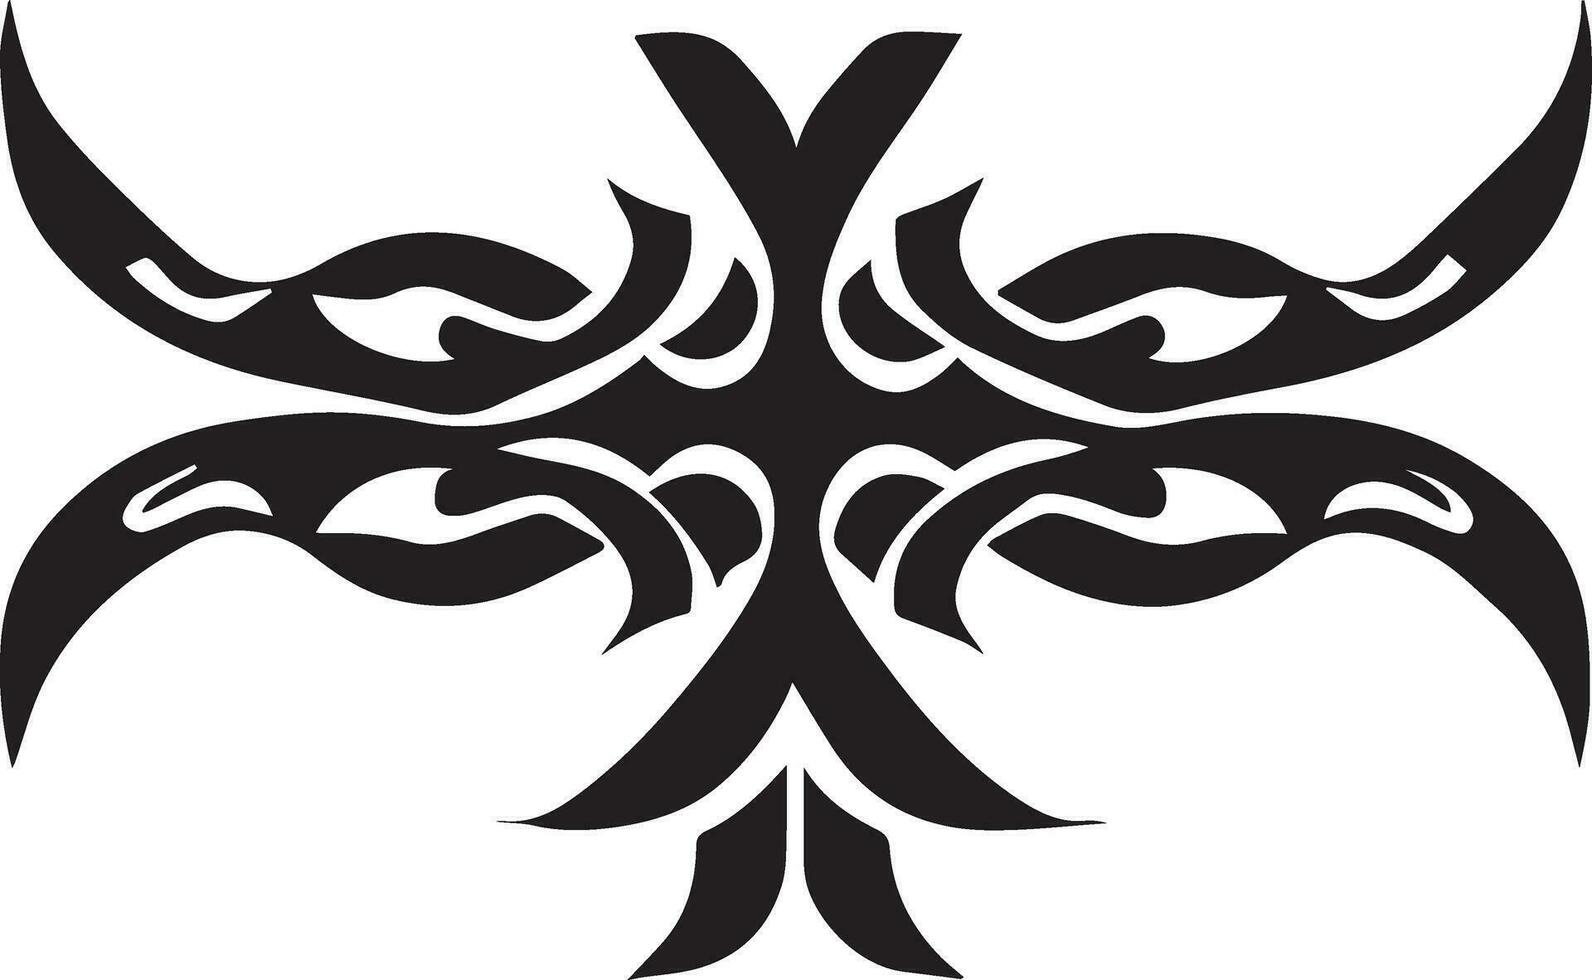 Tribal tattoo design vector illustration